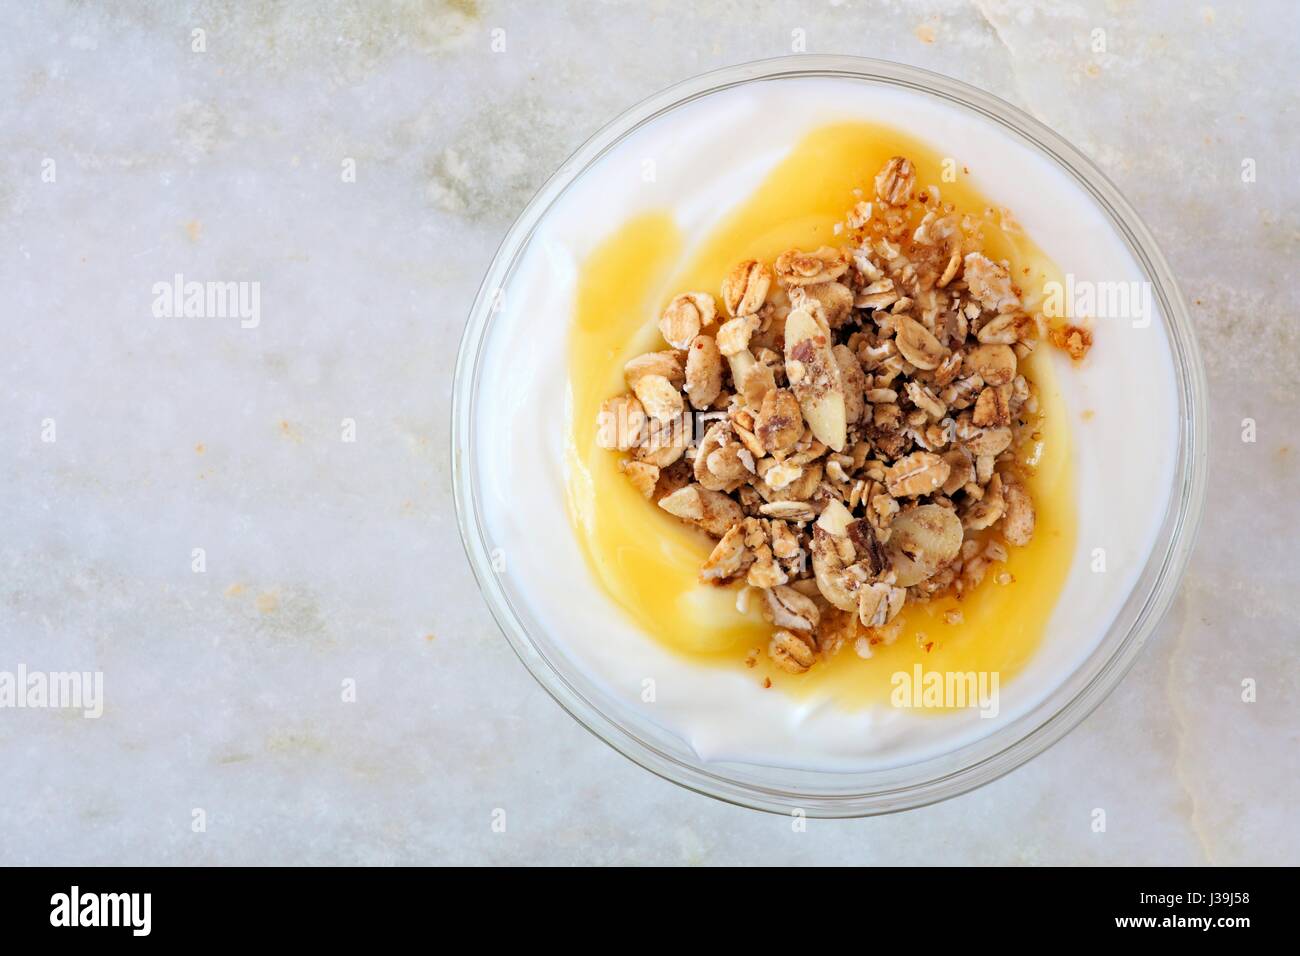 Aromatizzato al limone yogurt con muesli, vista aerea su marmo bianco sullo sfondo Foto Stock